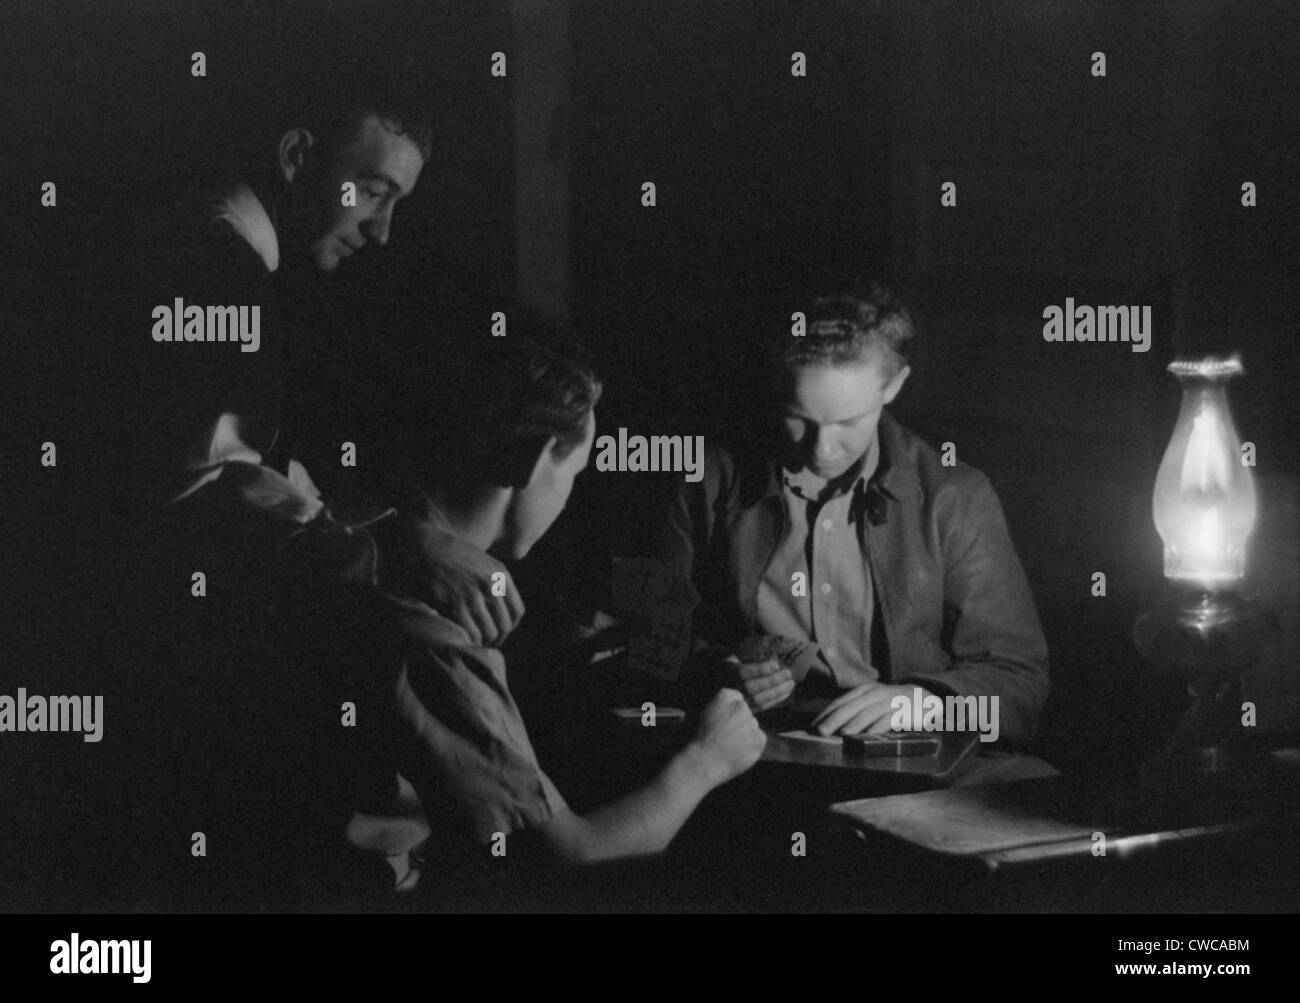 Männer spielen Karten durch das Licht einer Kerosin-Laterne. Pie-Stadt, Mexiko, 1939. Stockfoto